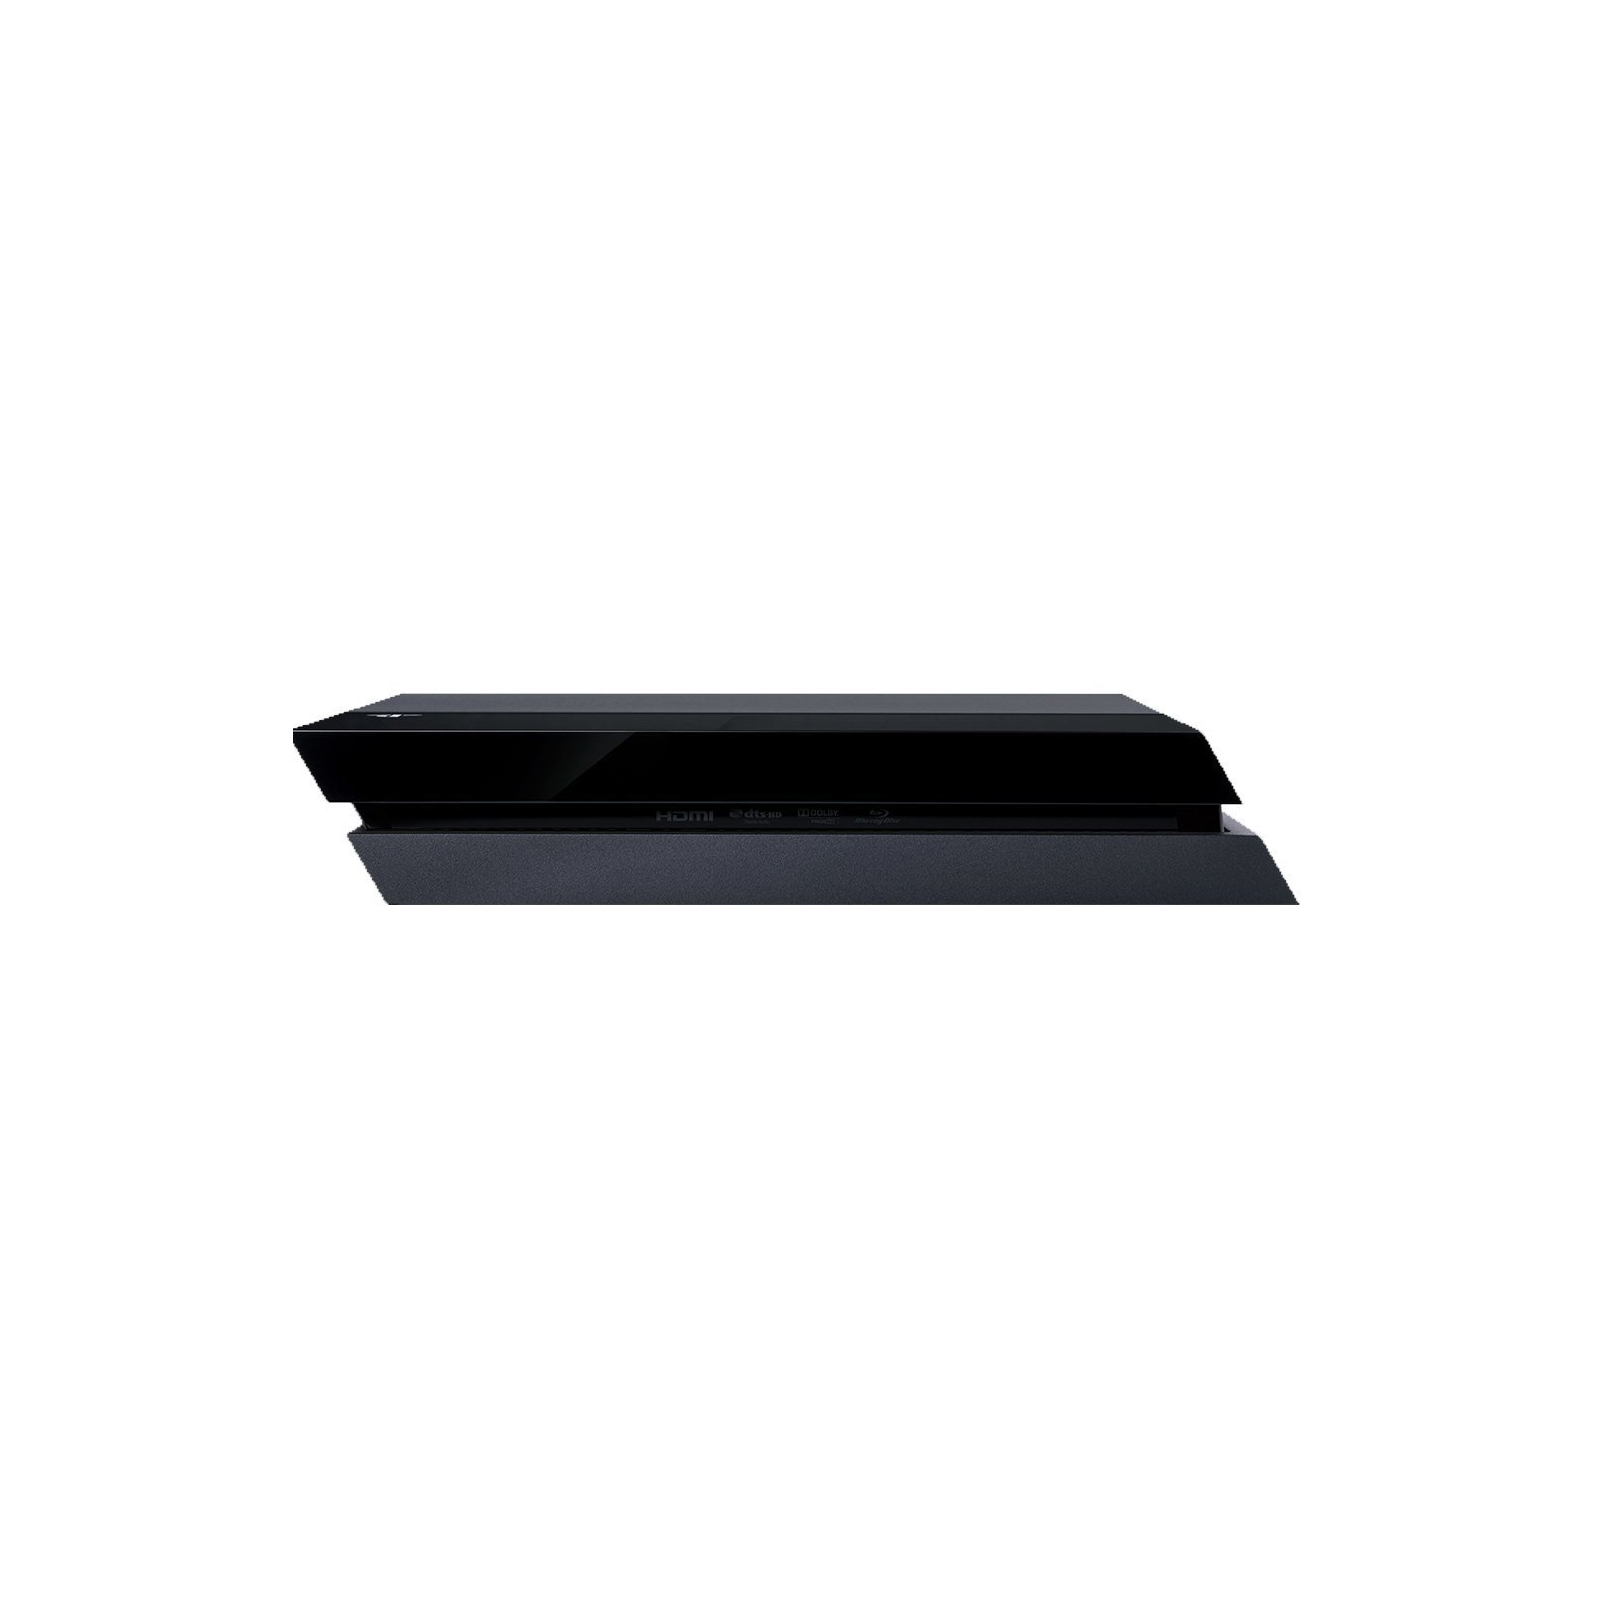 Игровая консоль Sony PlayStation 4 500GB Black (PS719437512) изображение 4